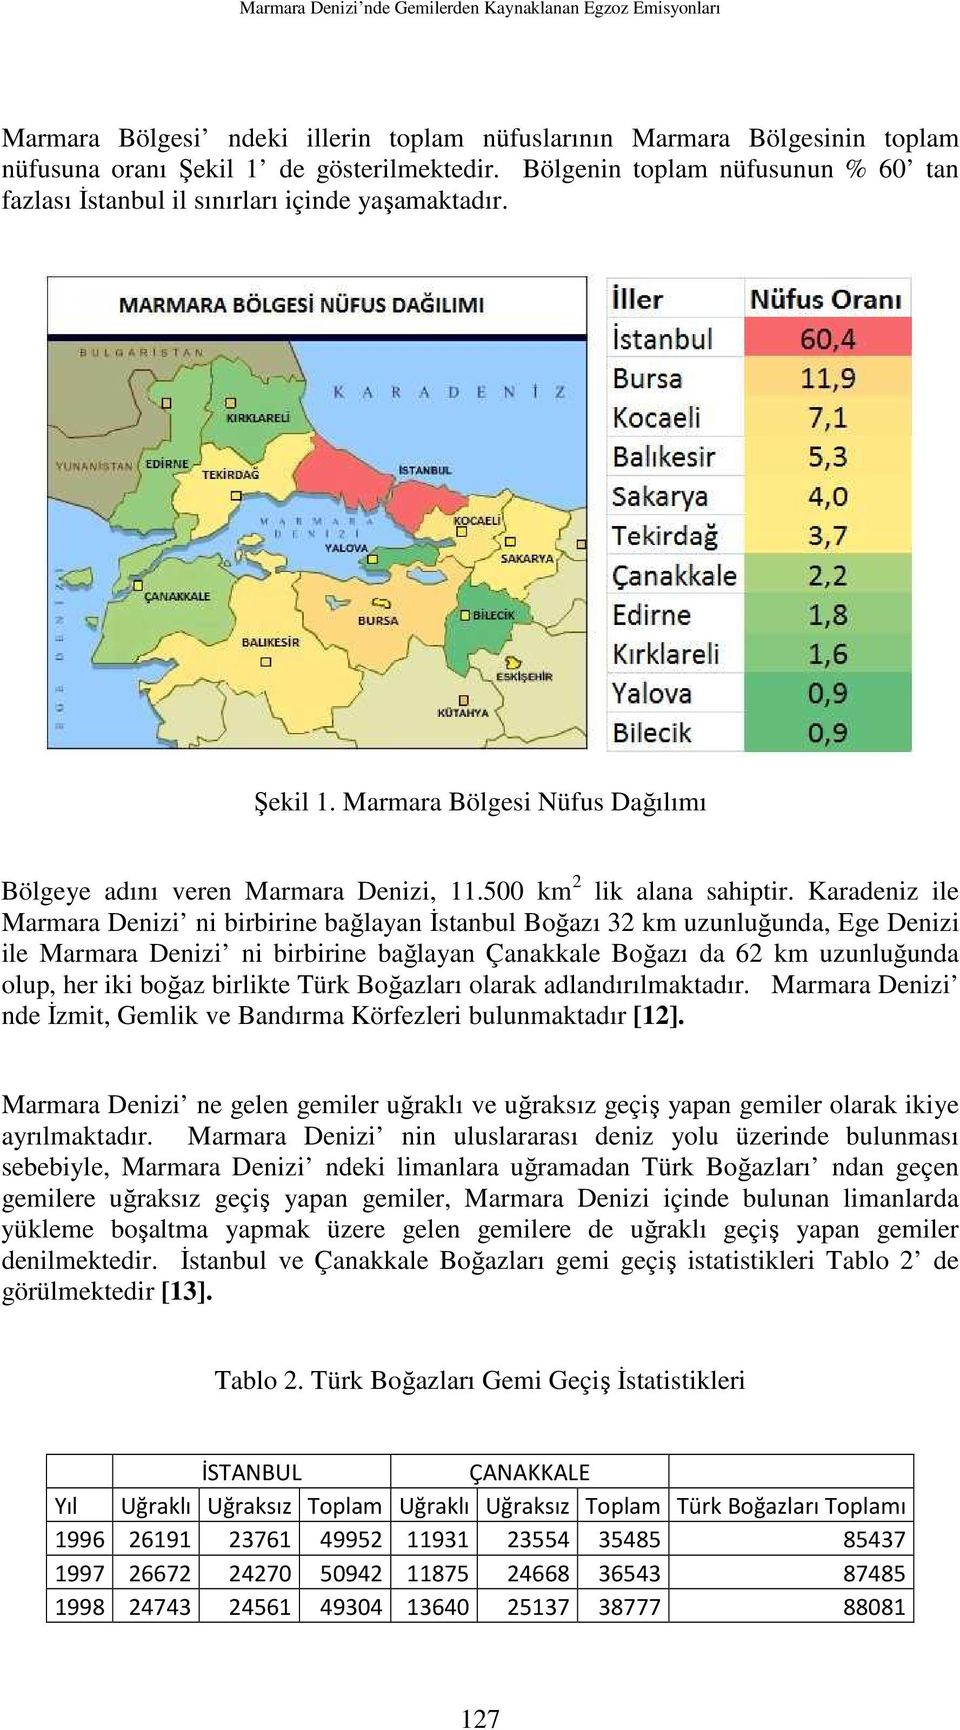 Karadeniz ile Marmara Denizi ni birbirine bağlayan Đstanbul Boğazı 32 km uzunluğunda, Ege Denizi ile Marmara Denizi ni birbirine bağlayan Çanakkale Boğazı da 62 km uzunluğunda olup, her iki boğaz